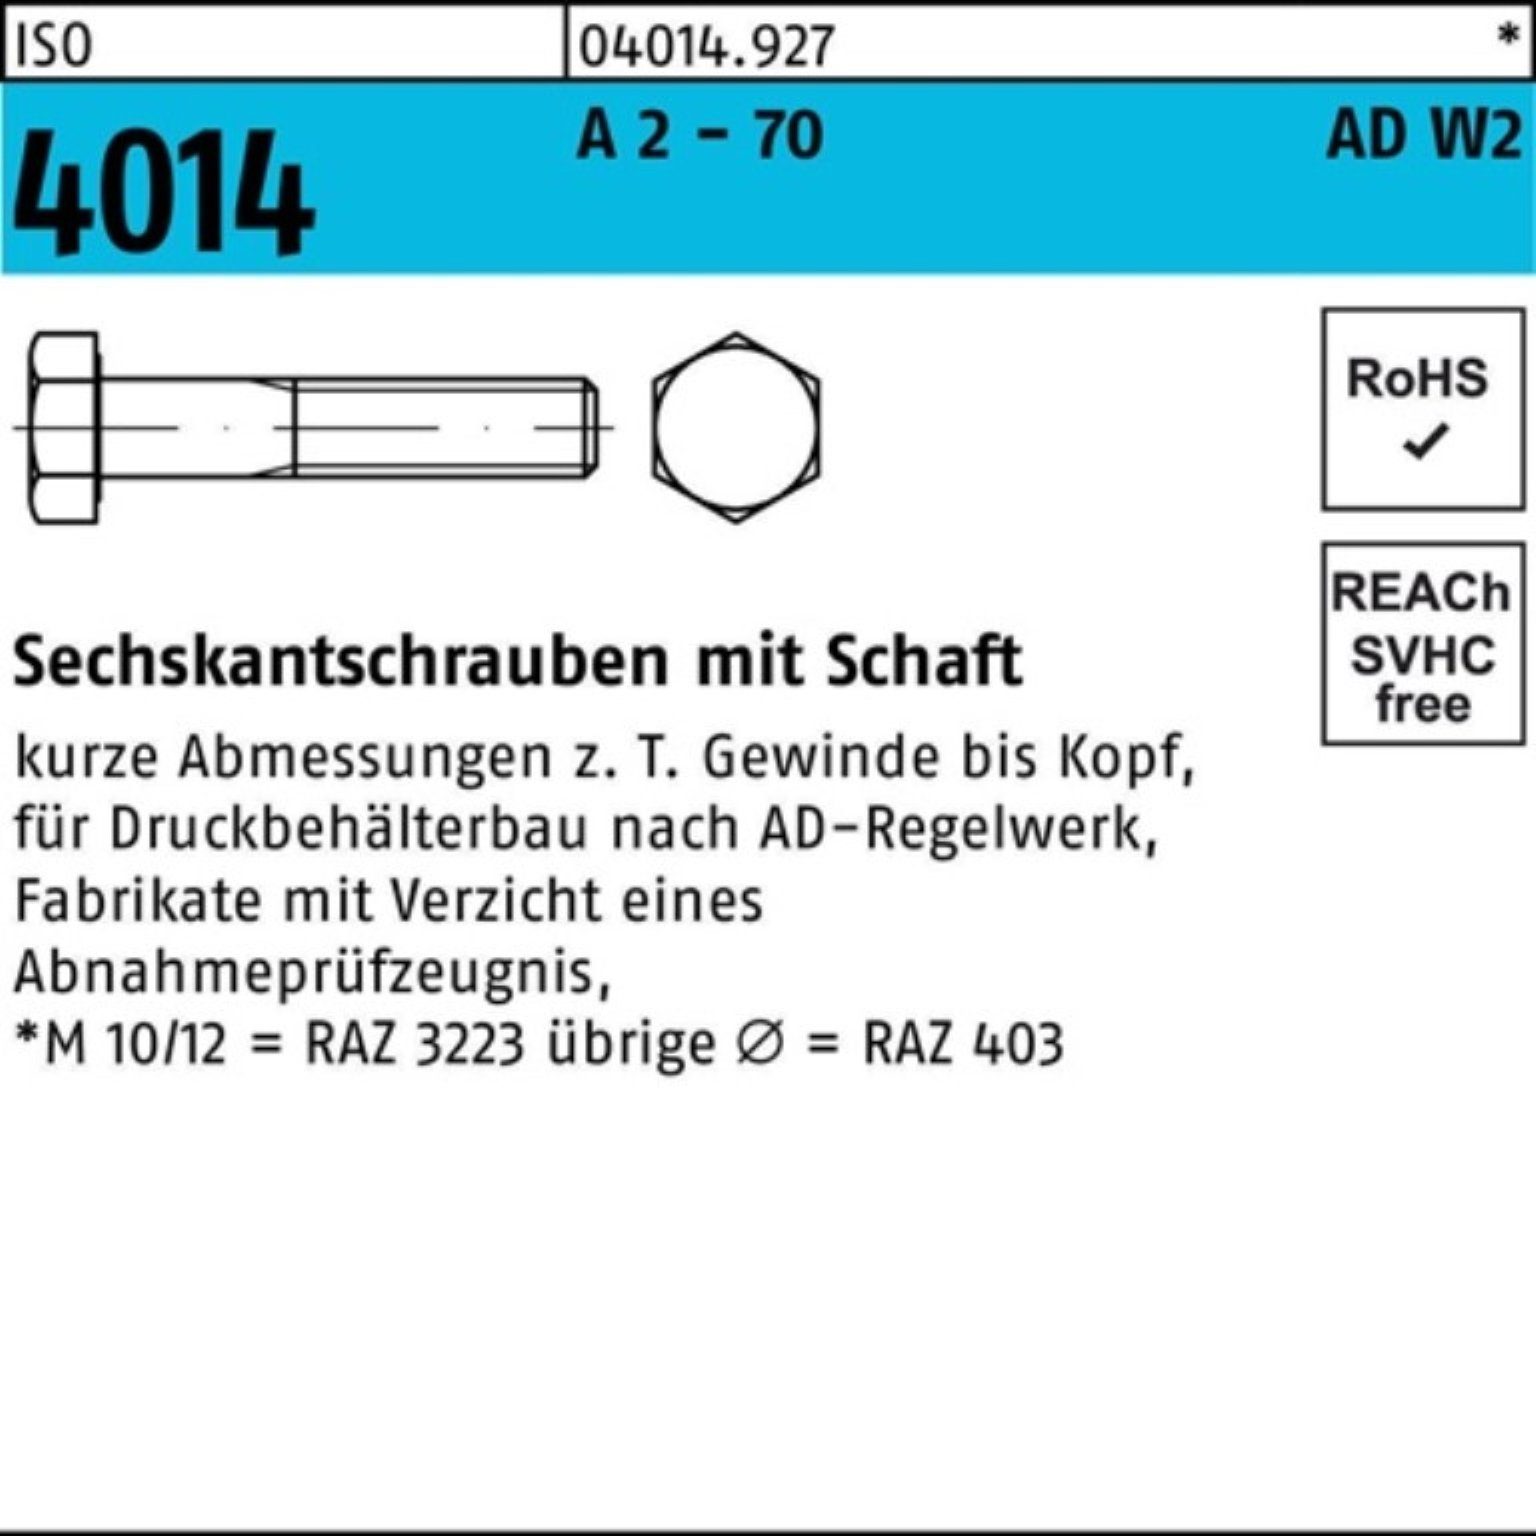 Sechskantschraube Schaft 4014 M20x 25 Sechskantschraube 70 AD-W2 ISO 90 Bufab - Pack 2 A 100er